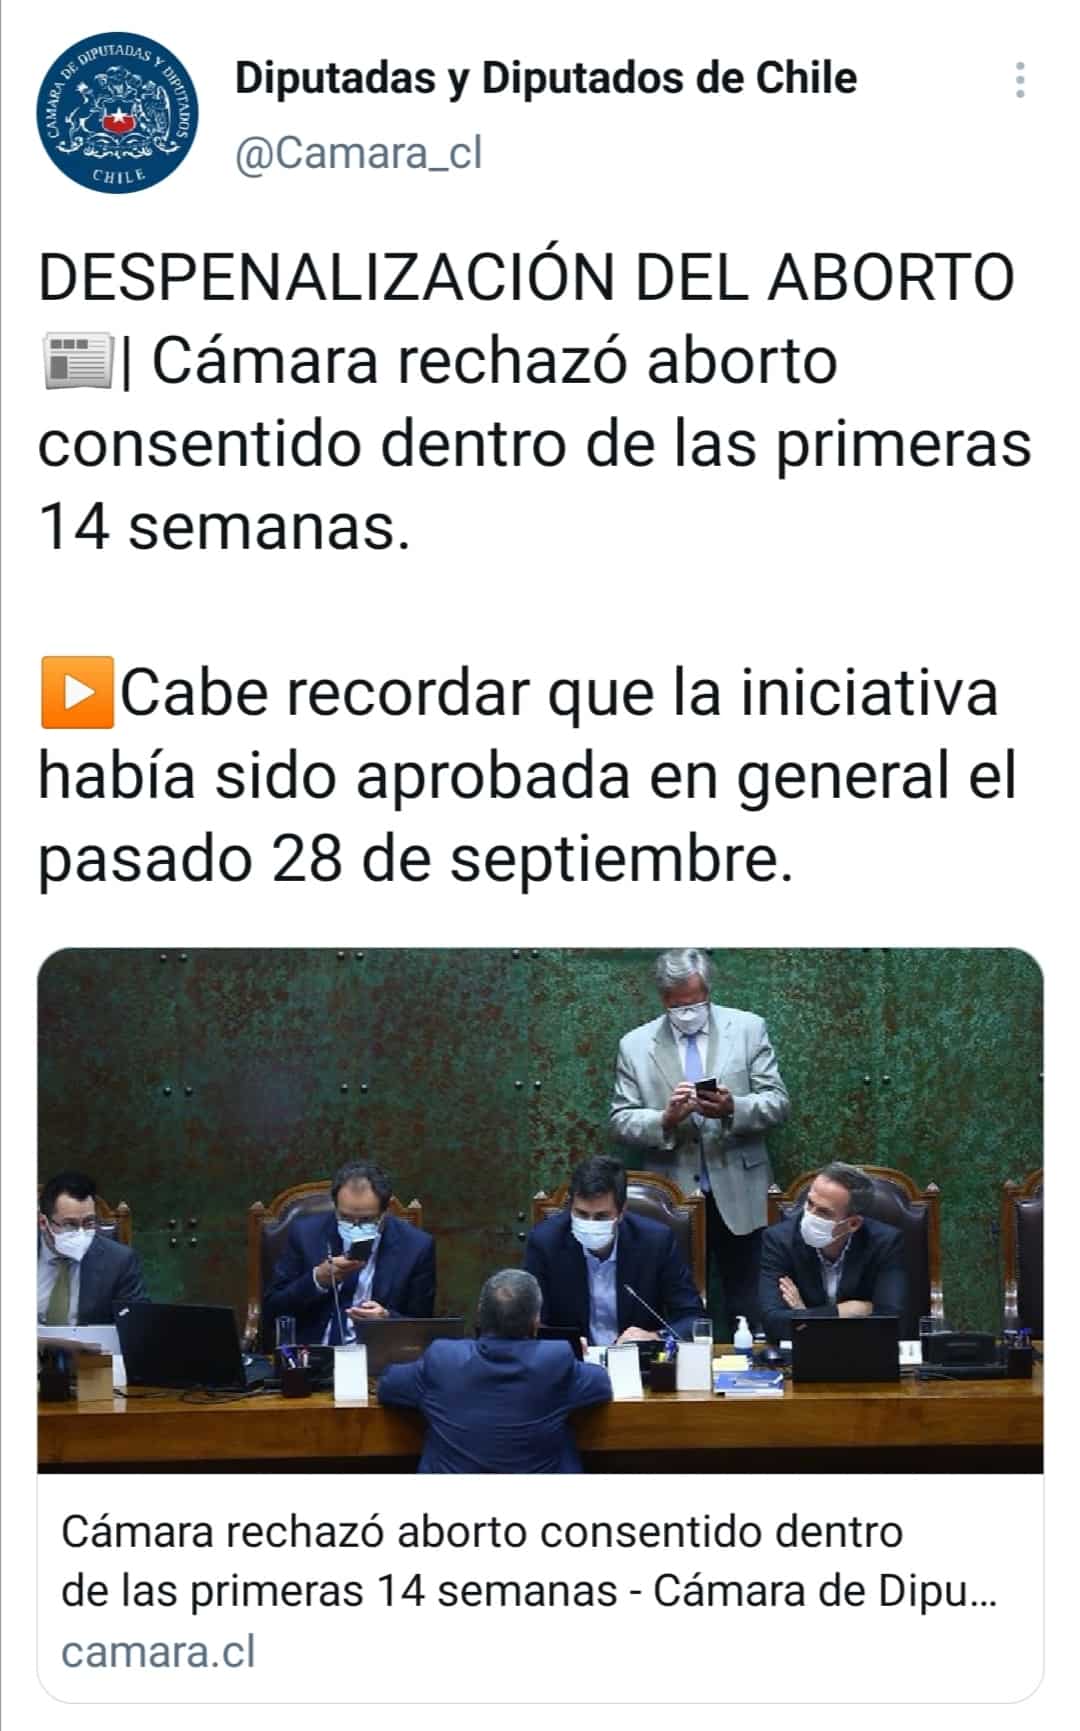 Despenalización del aborto en Chile. 